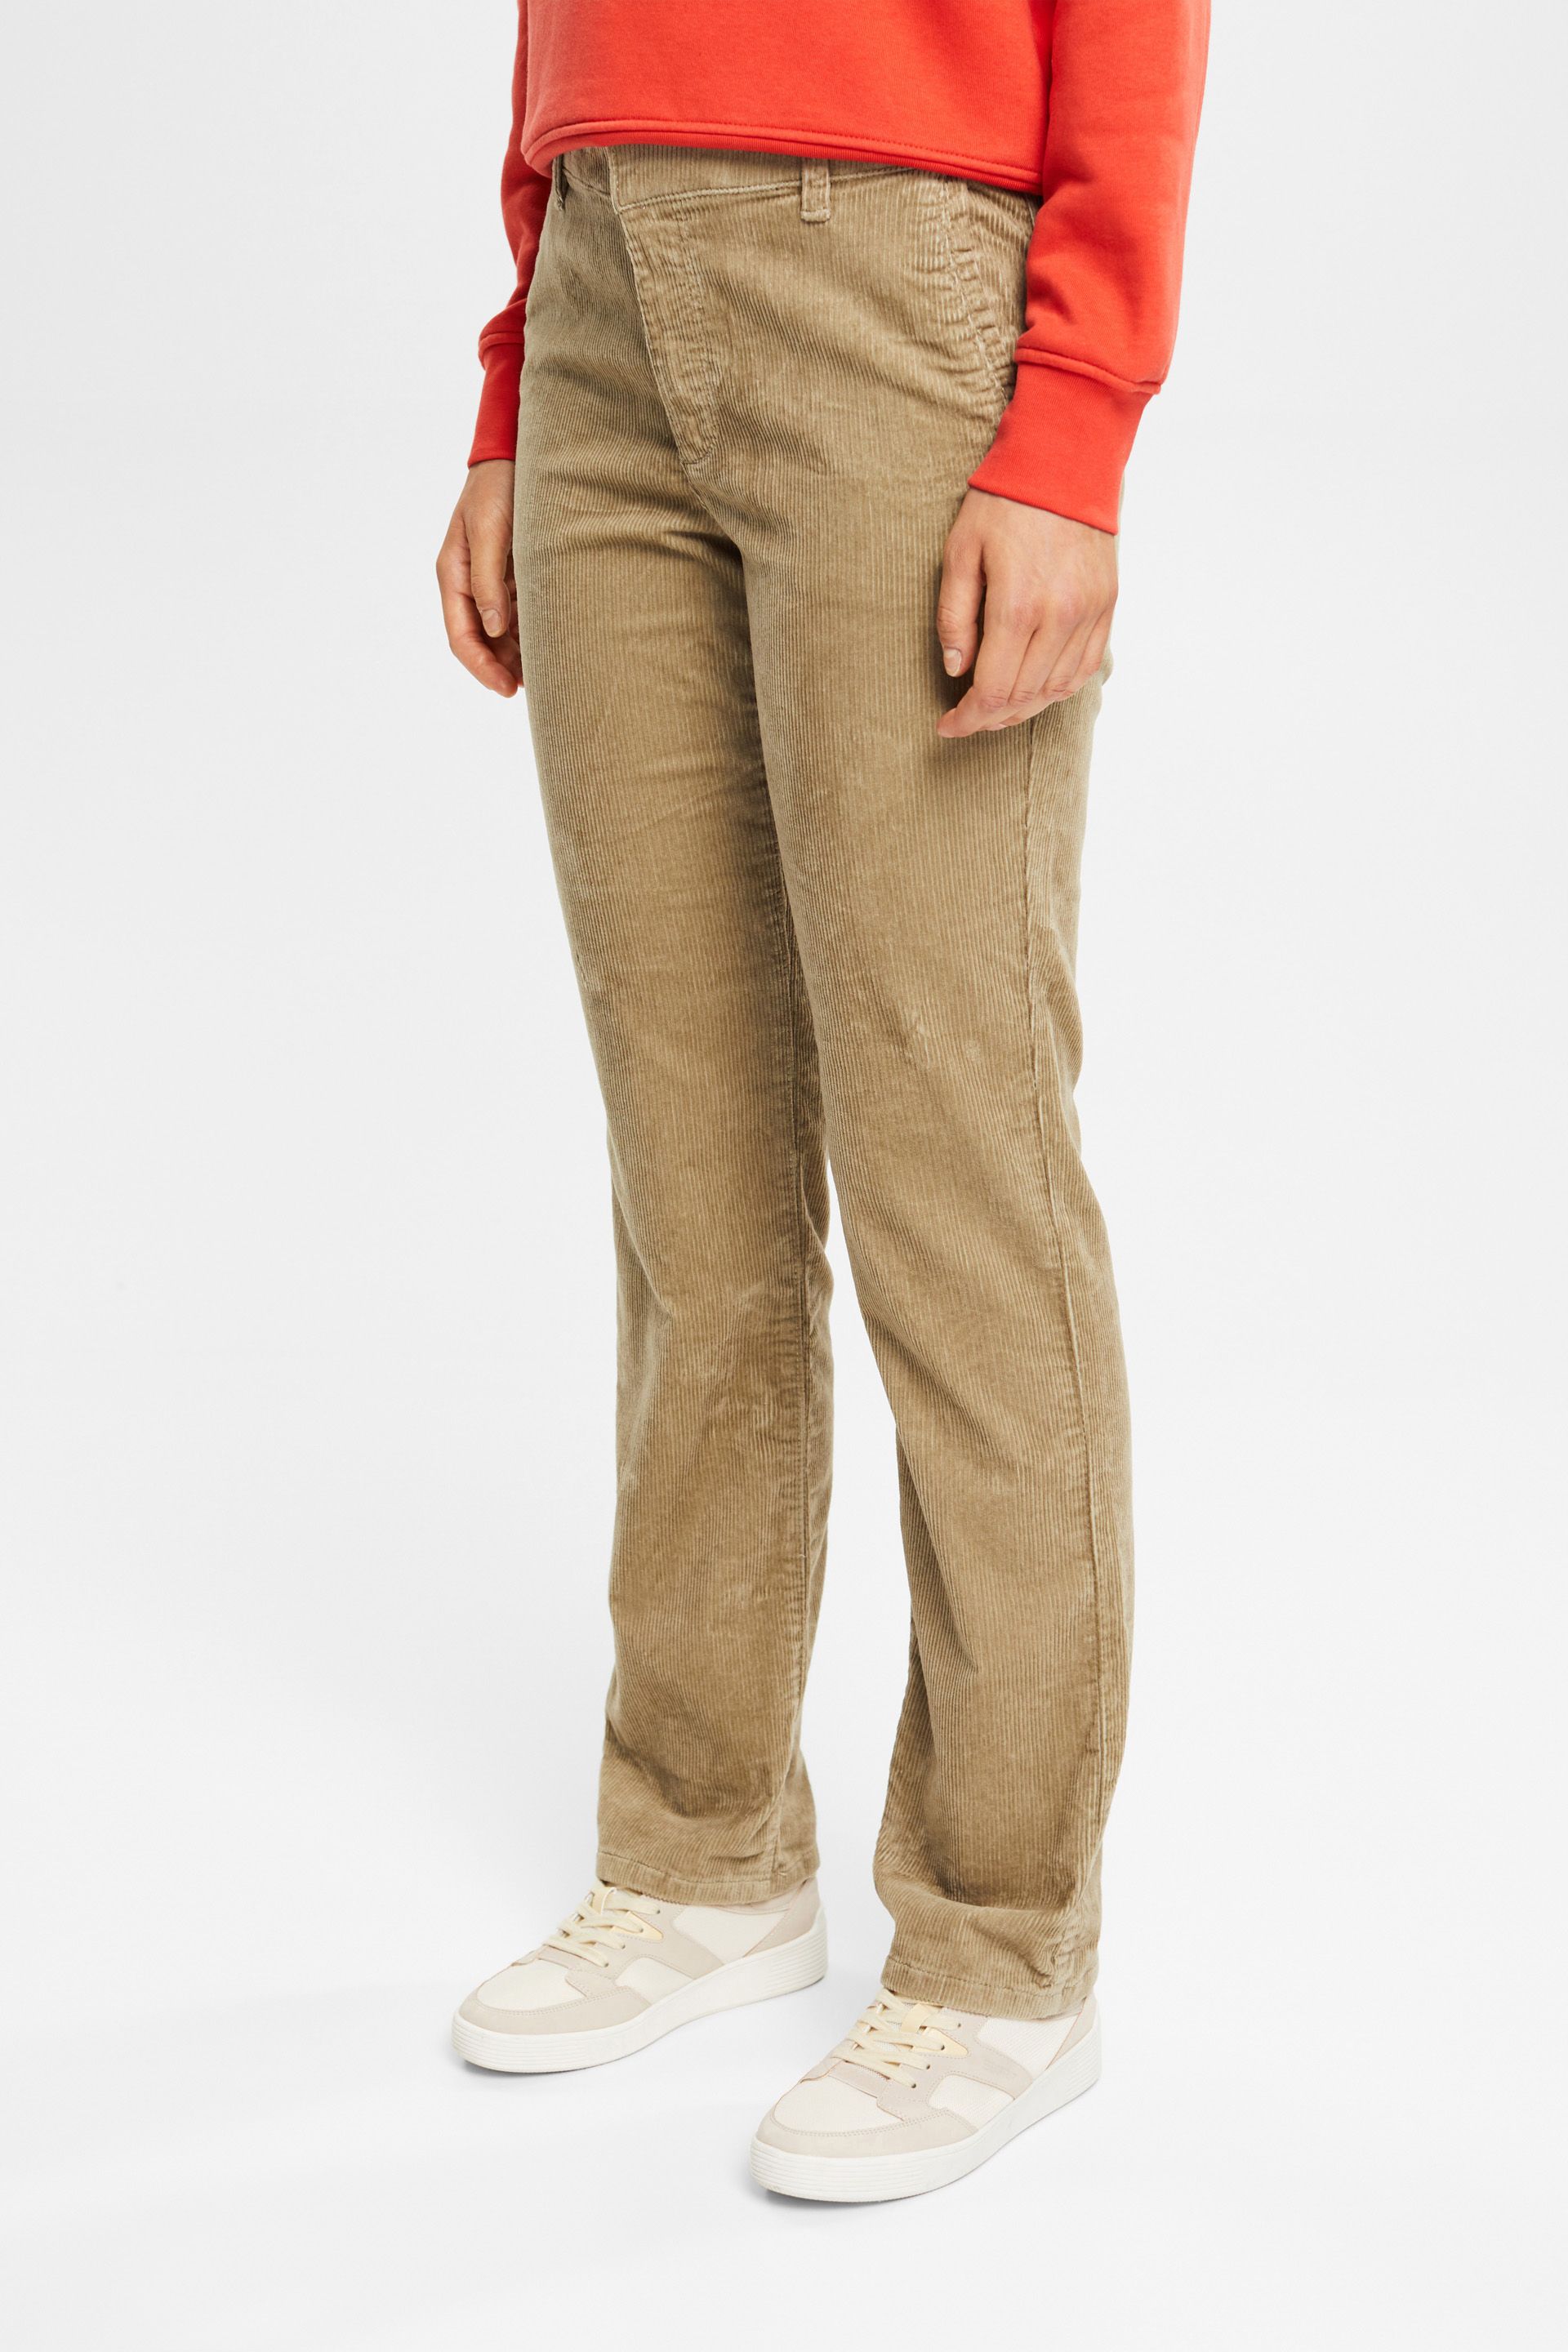 ESPRIT  Midrise corduroy trousers at our online shop